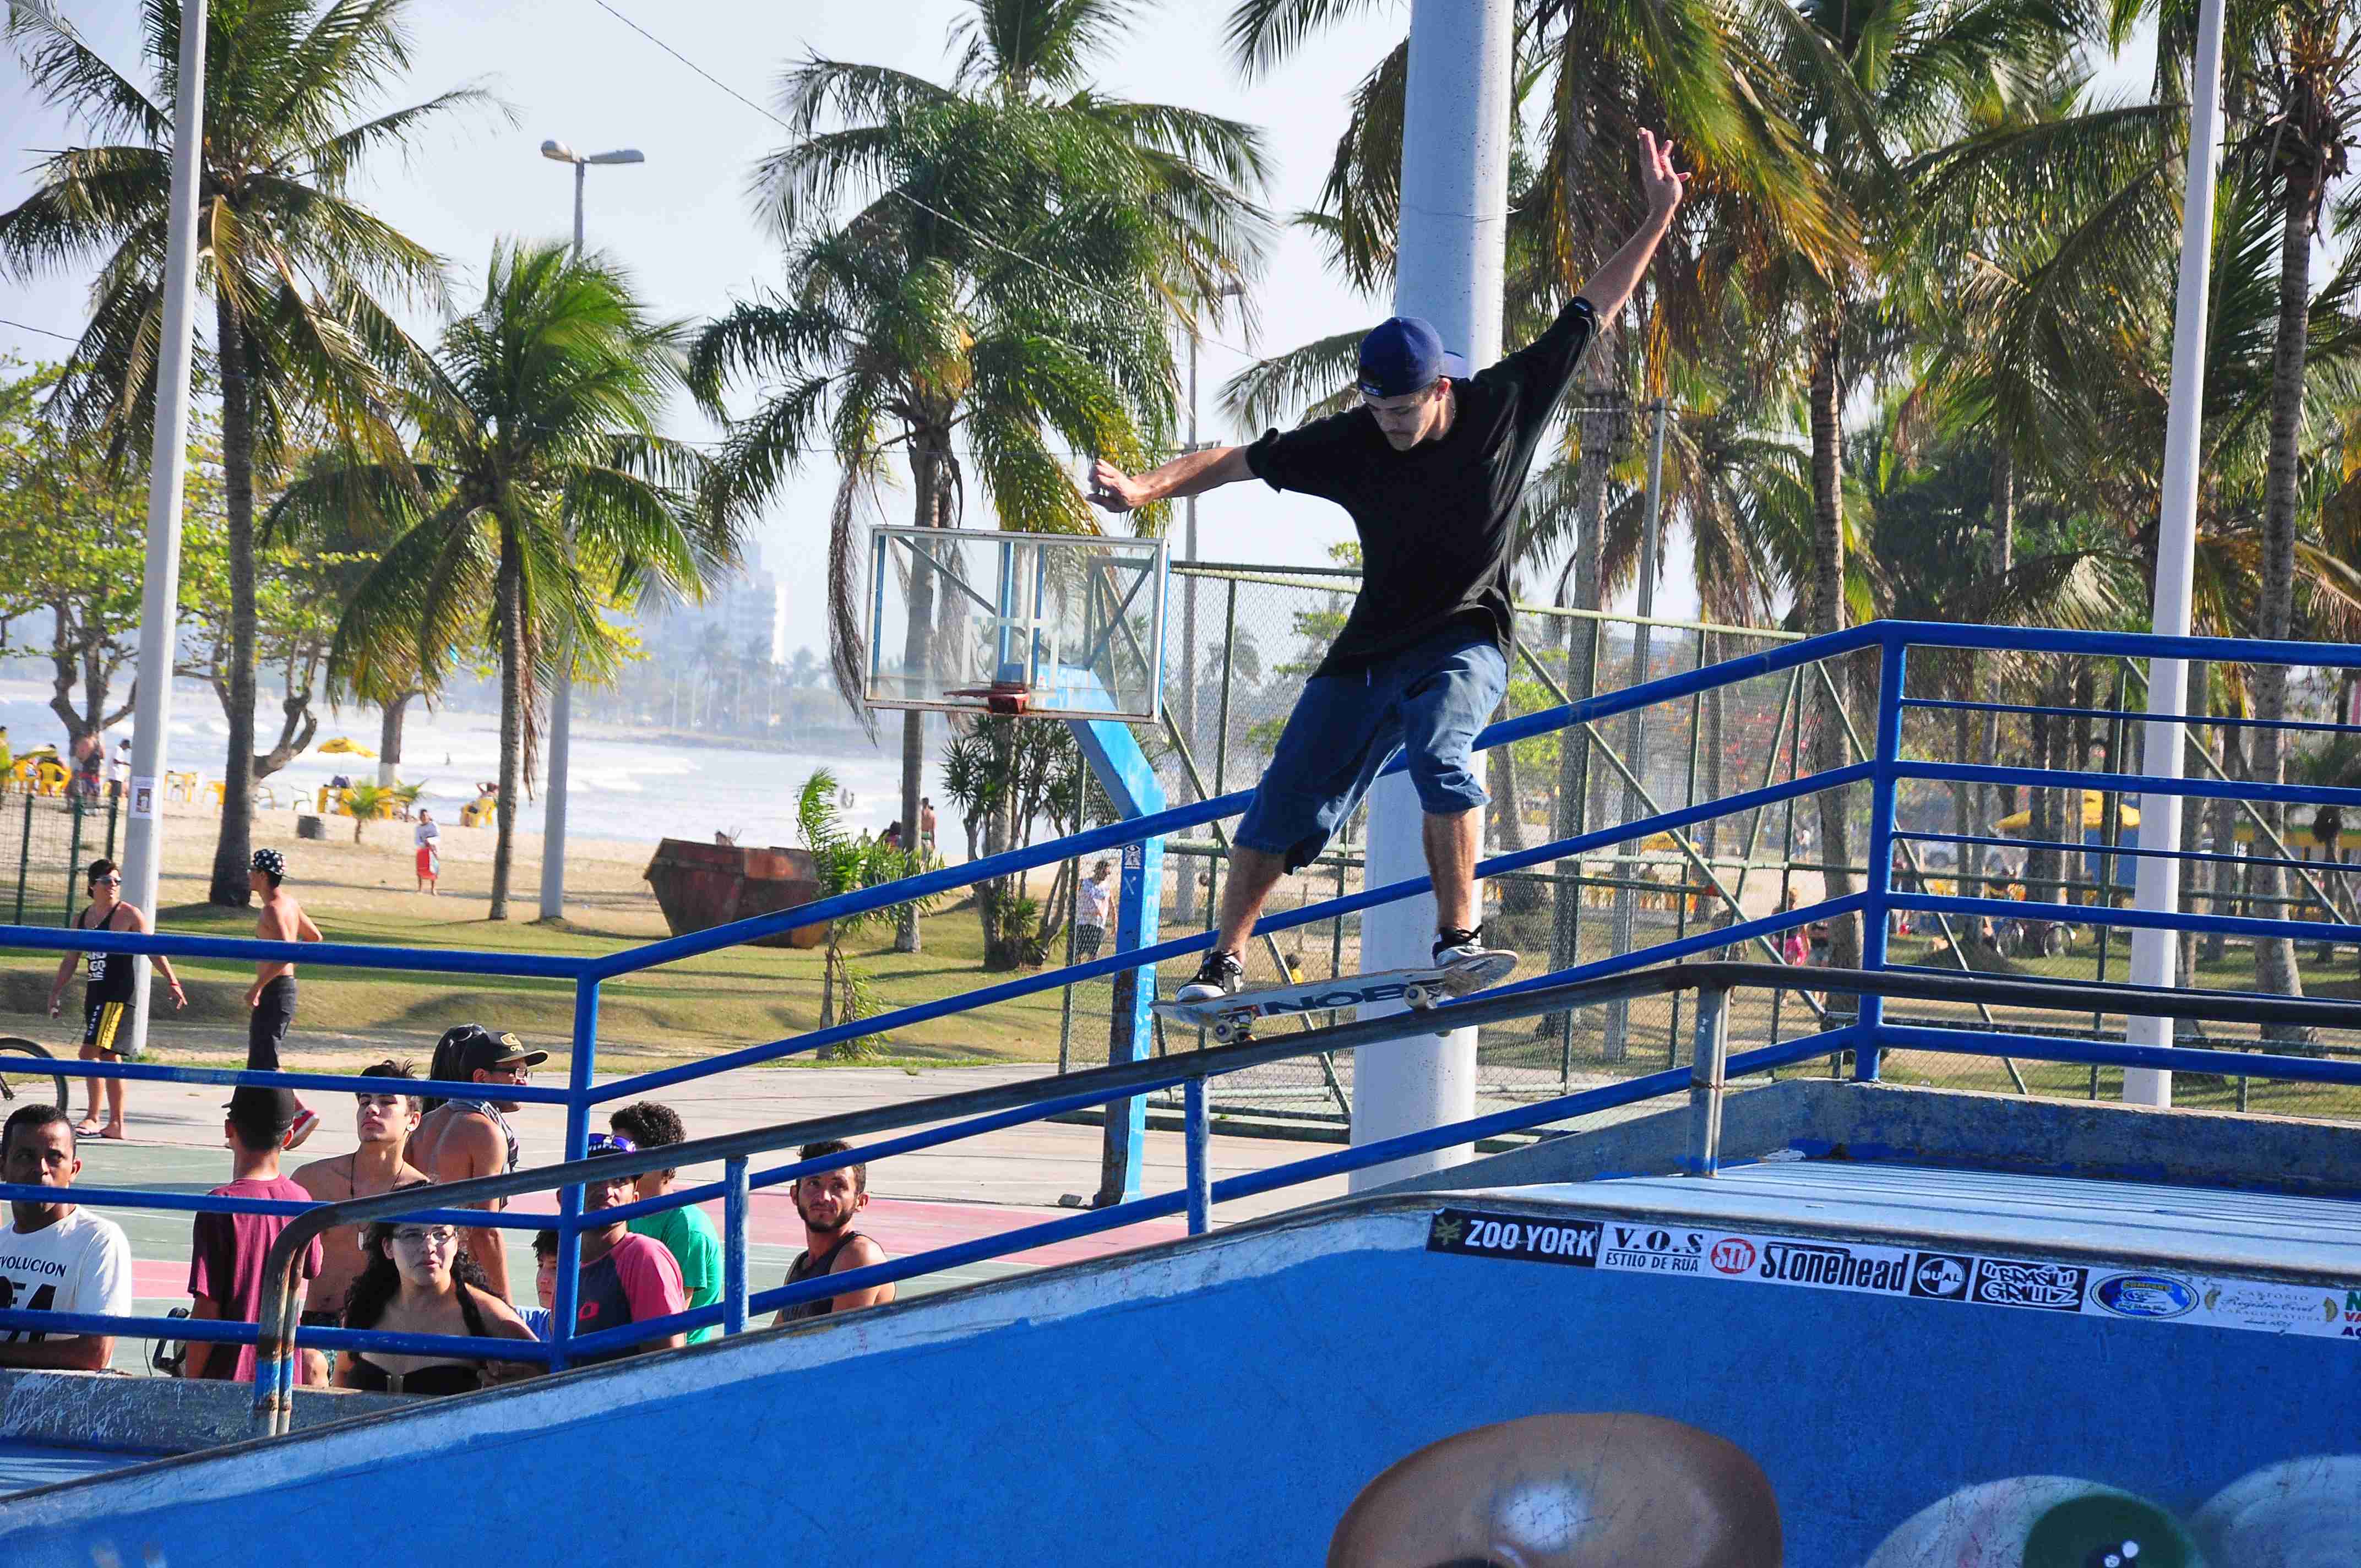 Campeonato de Skate movimenta a cidade no feriado prolongado (Foto: Luís Gava/PMC)